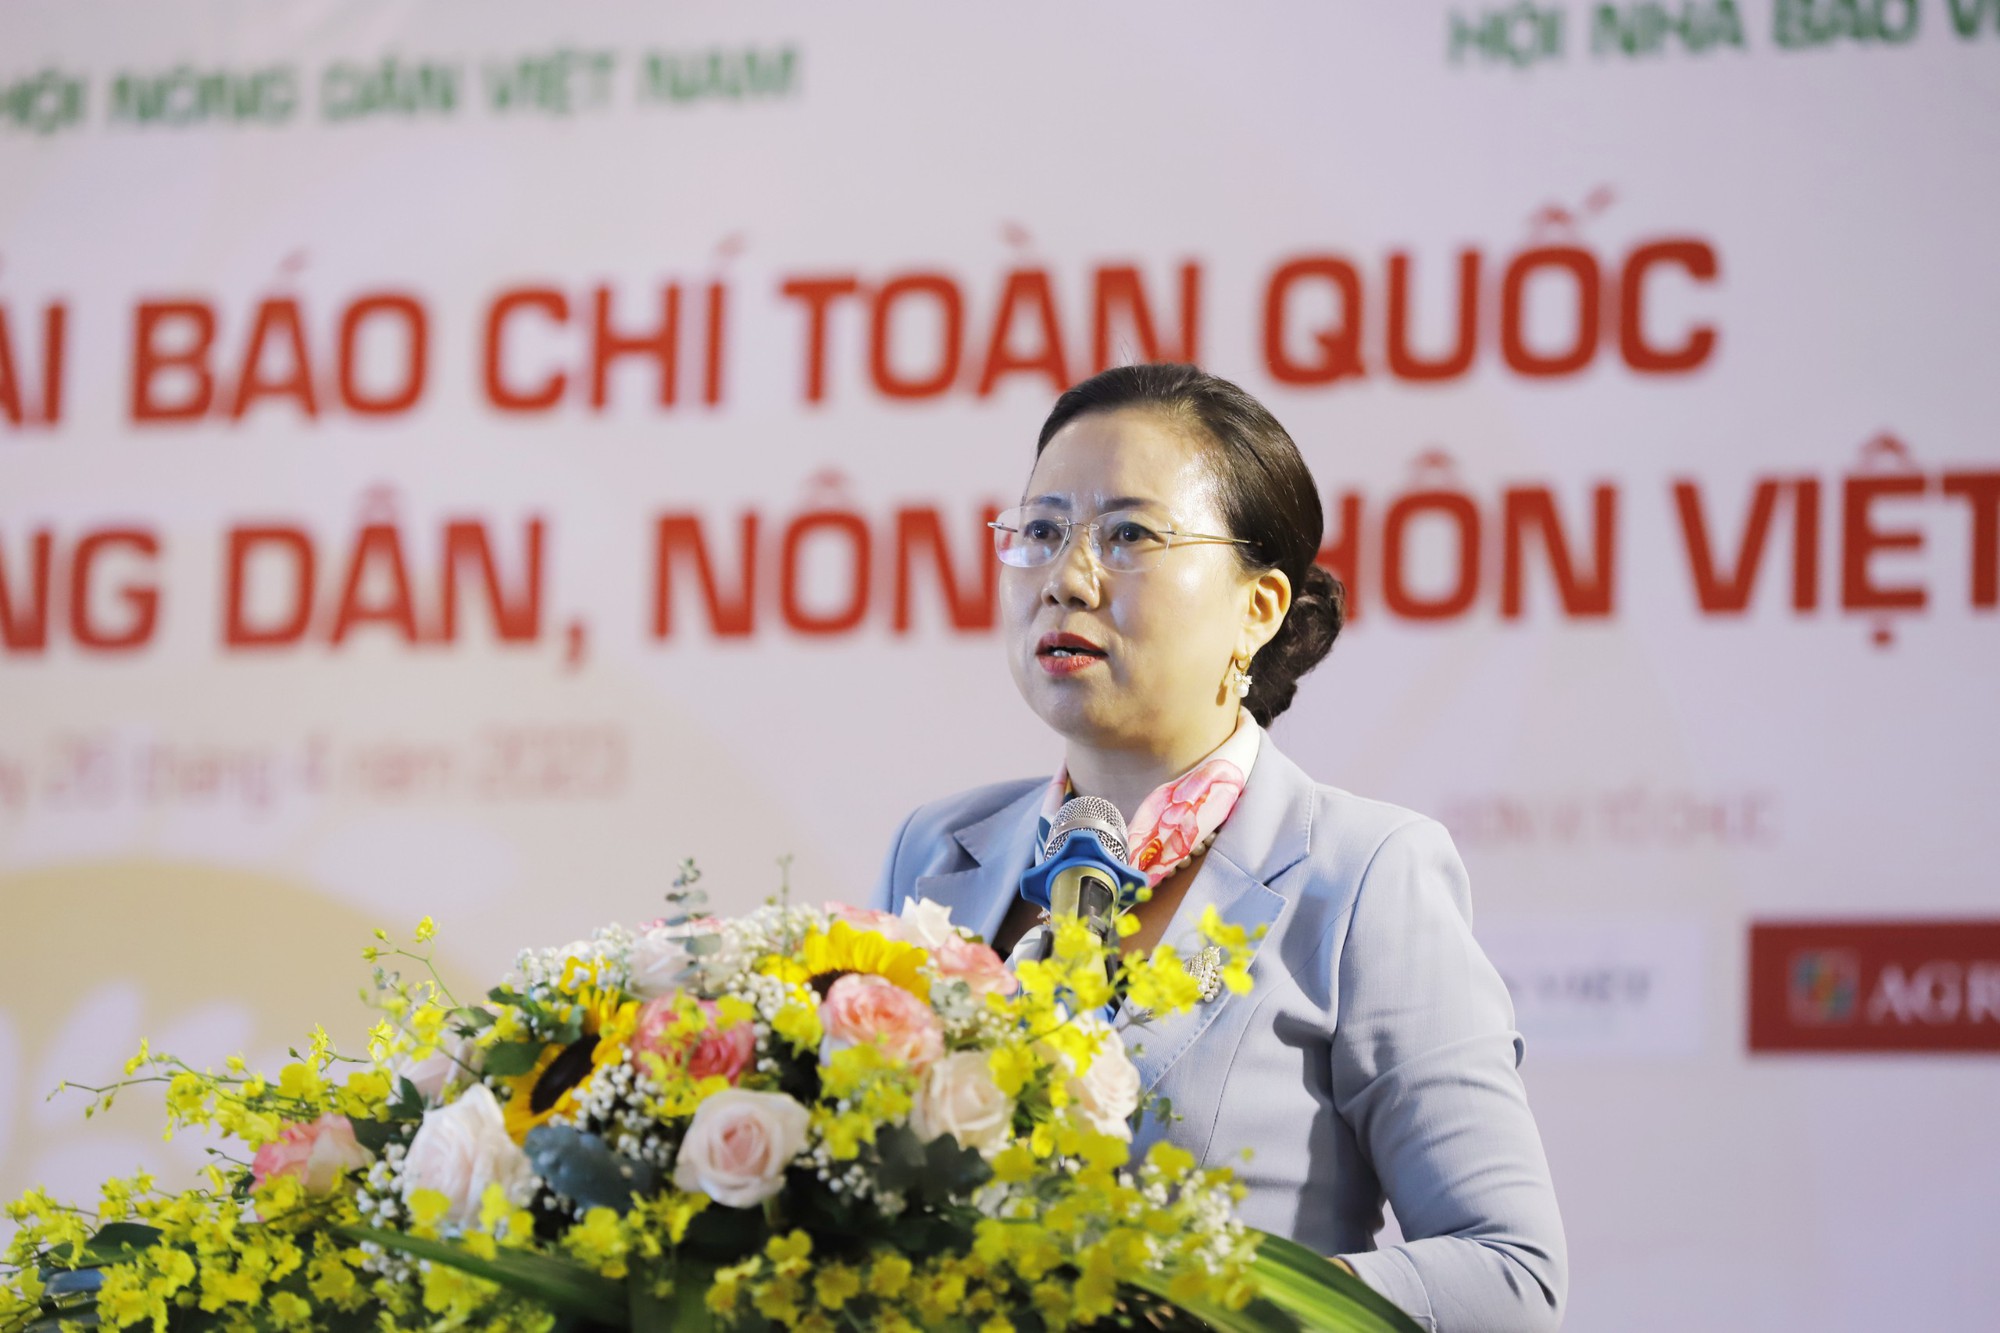 Phó Chủ tịch Hội NDVN Bùi Thị Thơm: Viết về nông nghiệp, nông dân, nông thôn là nhiệm vụ tuyên truyền quan trọng của Hội - Ảnh 1.